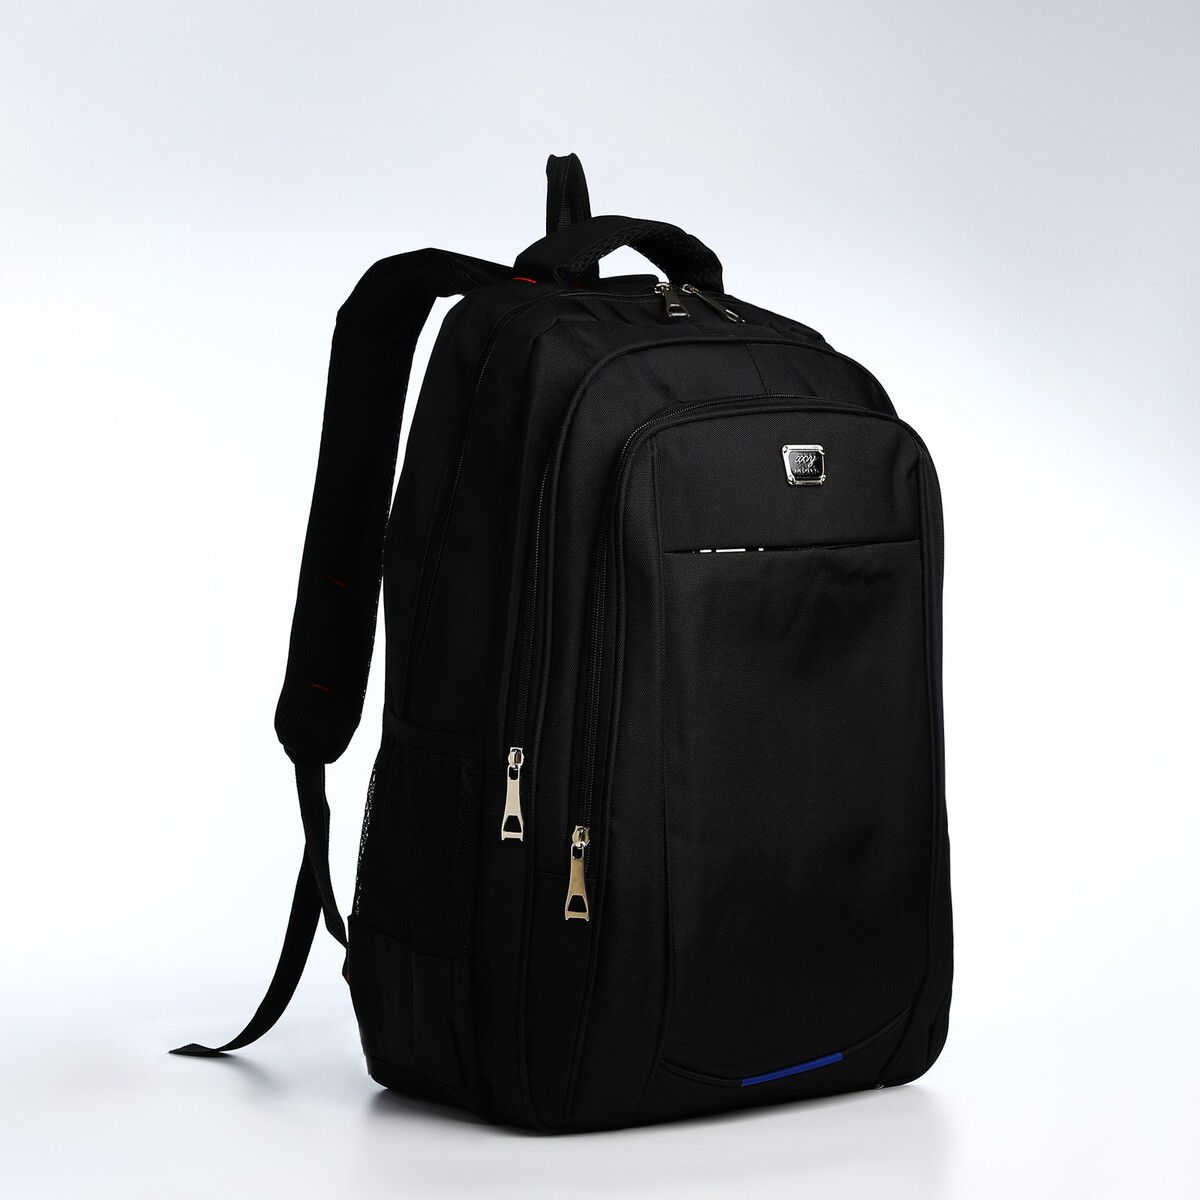 Рюкзак мужской на молниях, 3 наружных кармана, цвет черный/синий/серый рюкзак туристический на молнии 4 наружных кармана синий